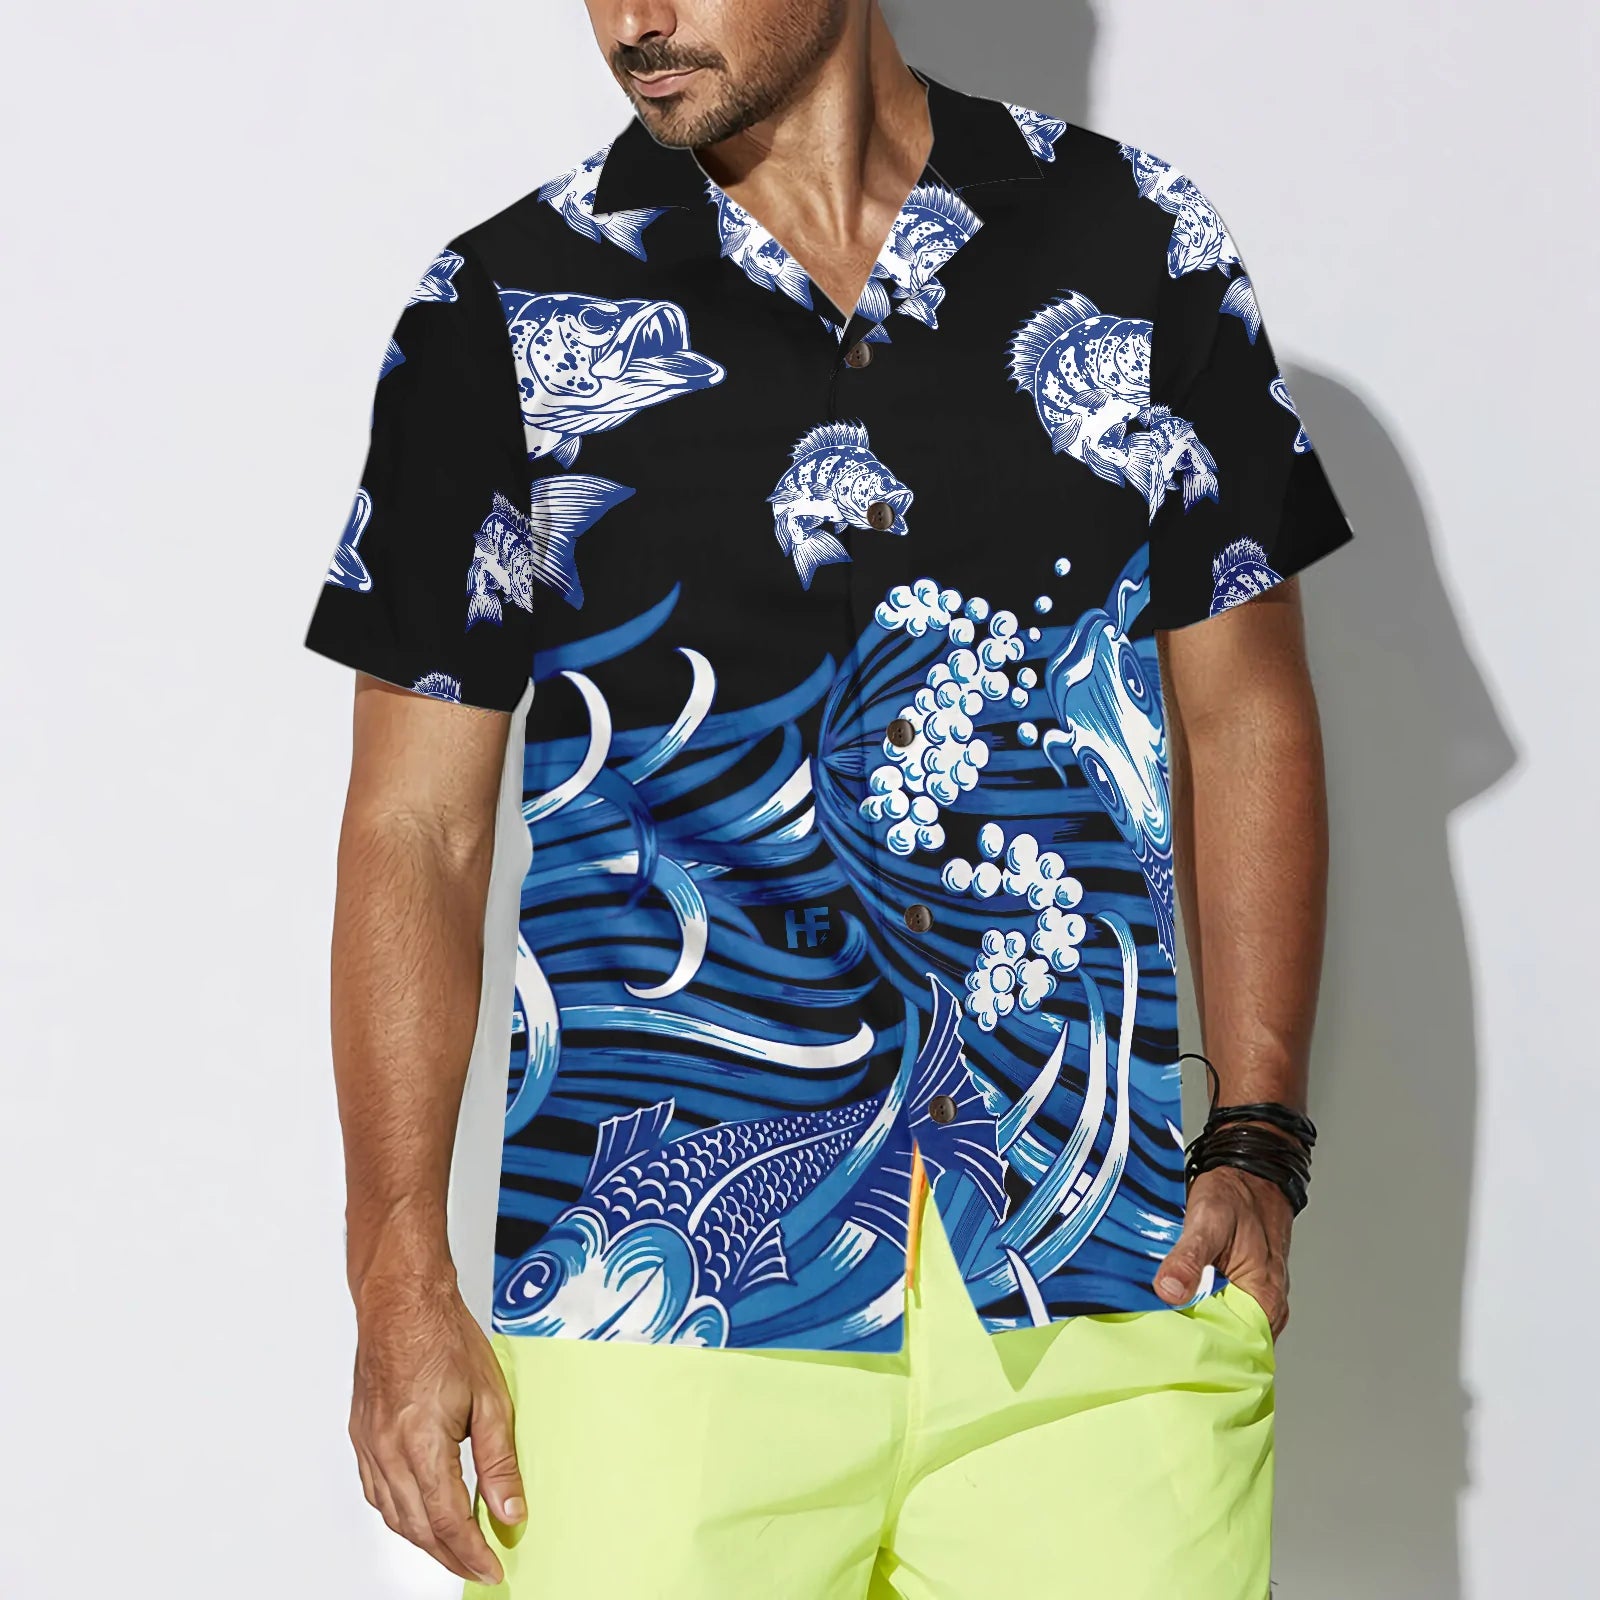 Bass Fish Hawaiian Shirt, 3D Fishing Aloha Shirt, Perfect Gift for Fishing Lovers, Friends, Husband, Boyfriend, Family